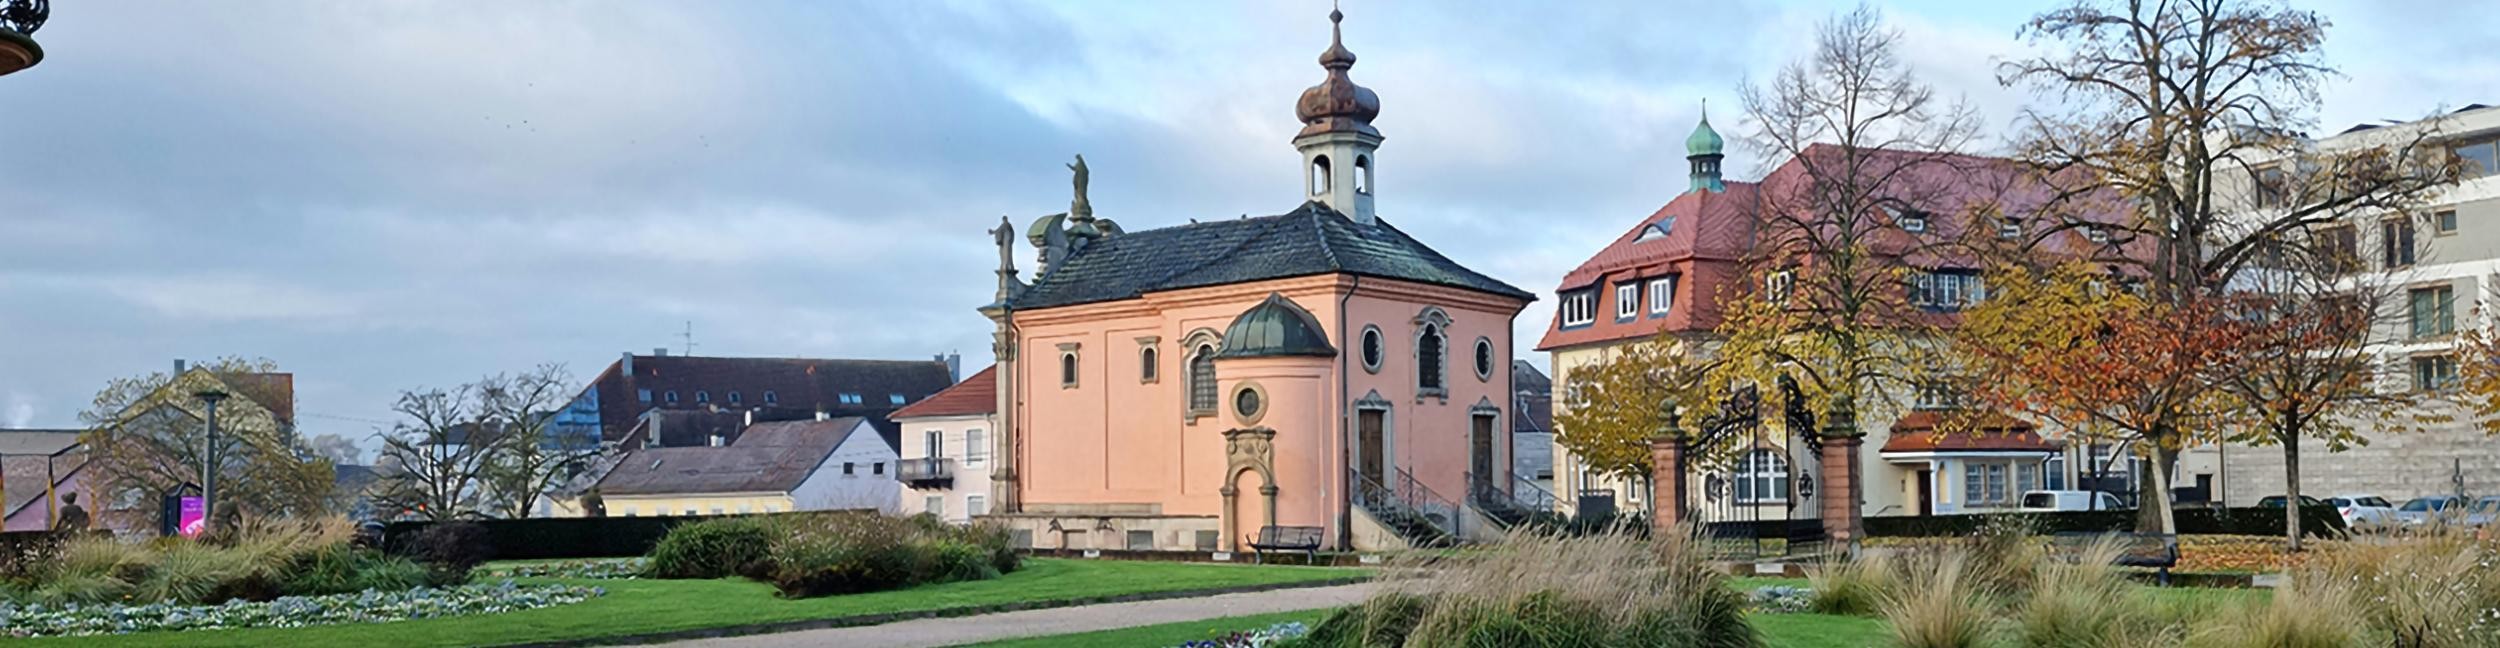 Einsiedeln Chapel in Rastatt